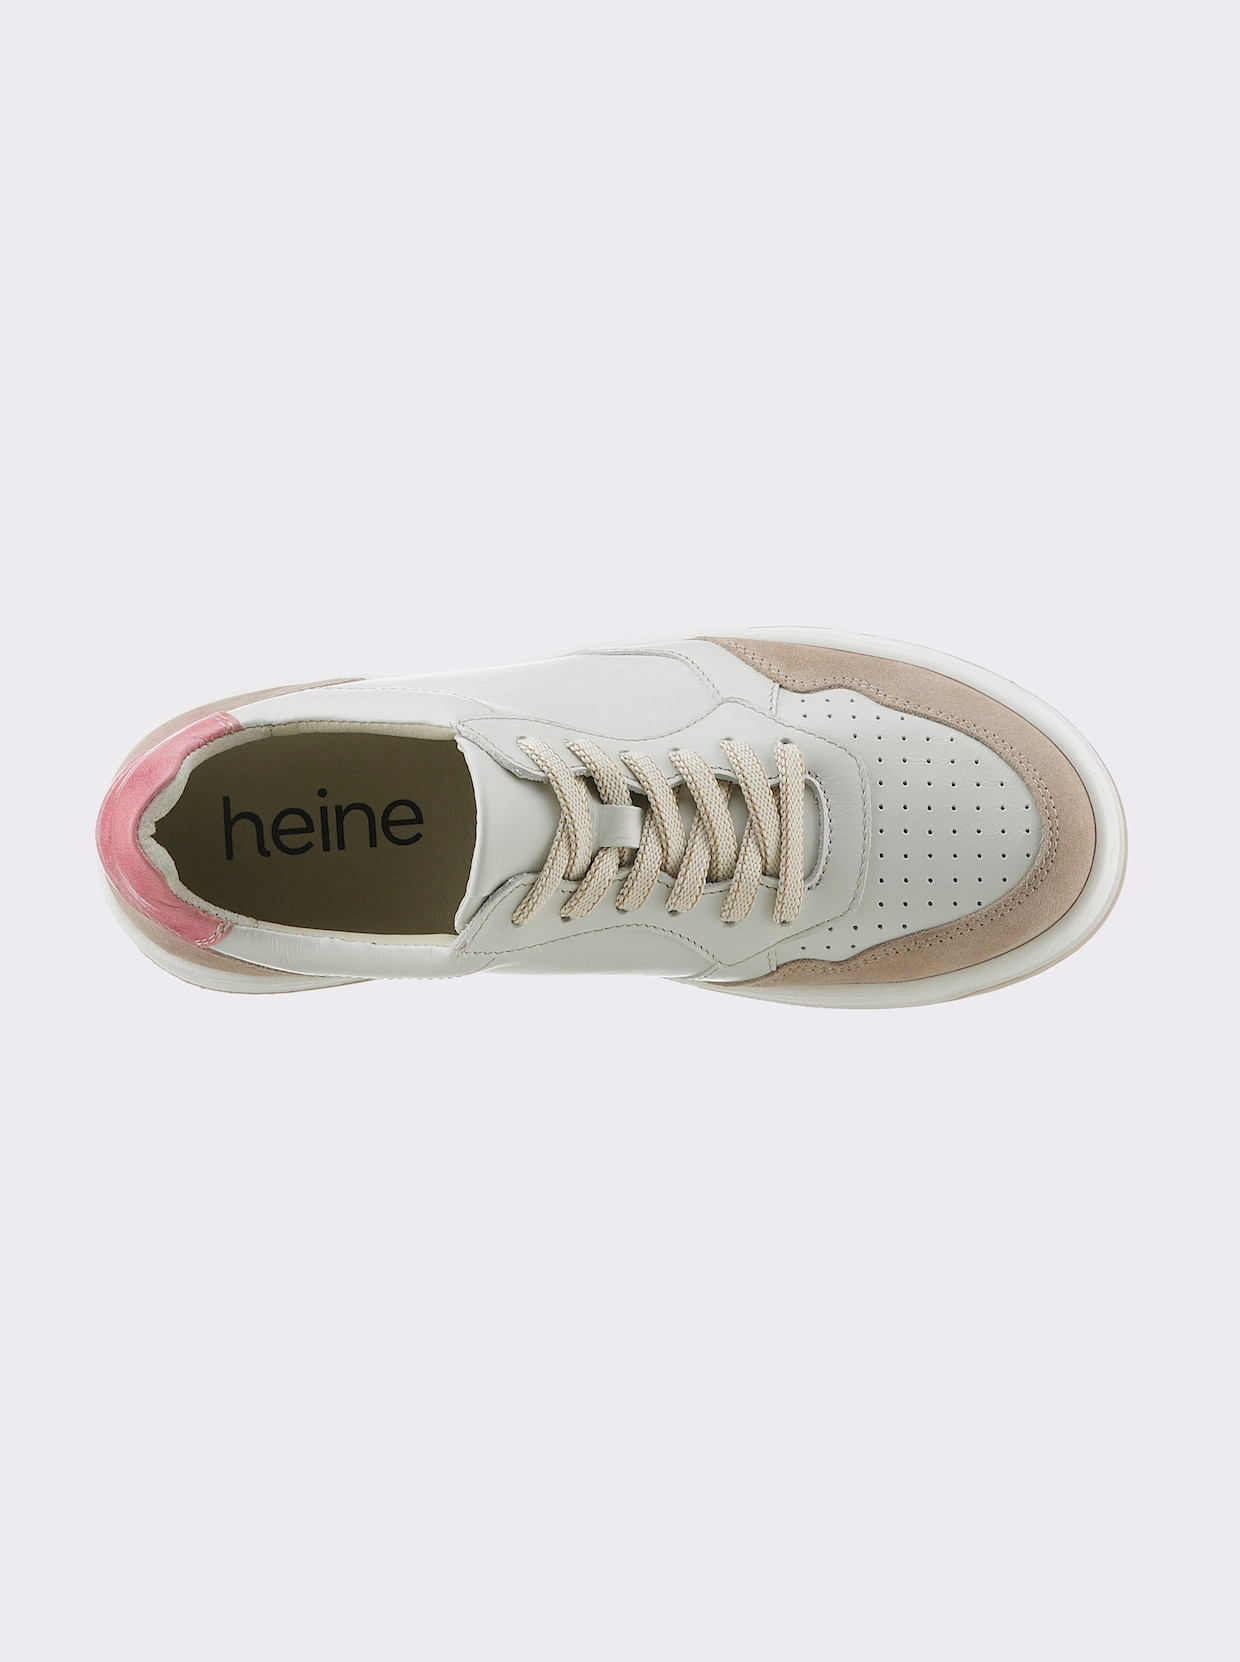 heine Sneaker - ecru-mauve